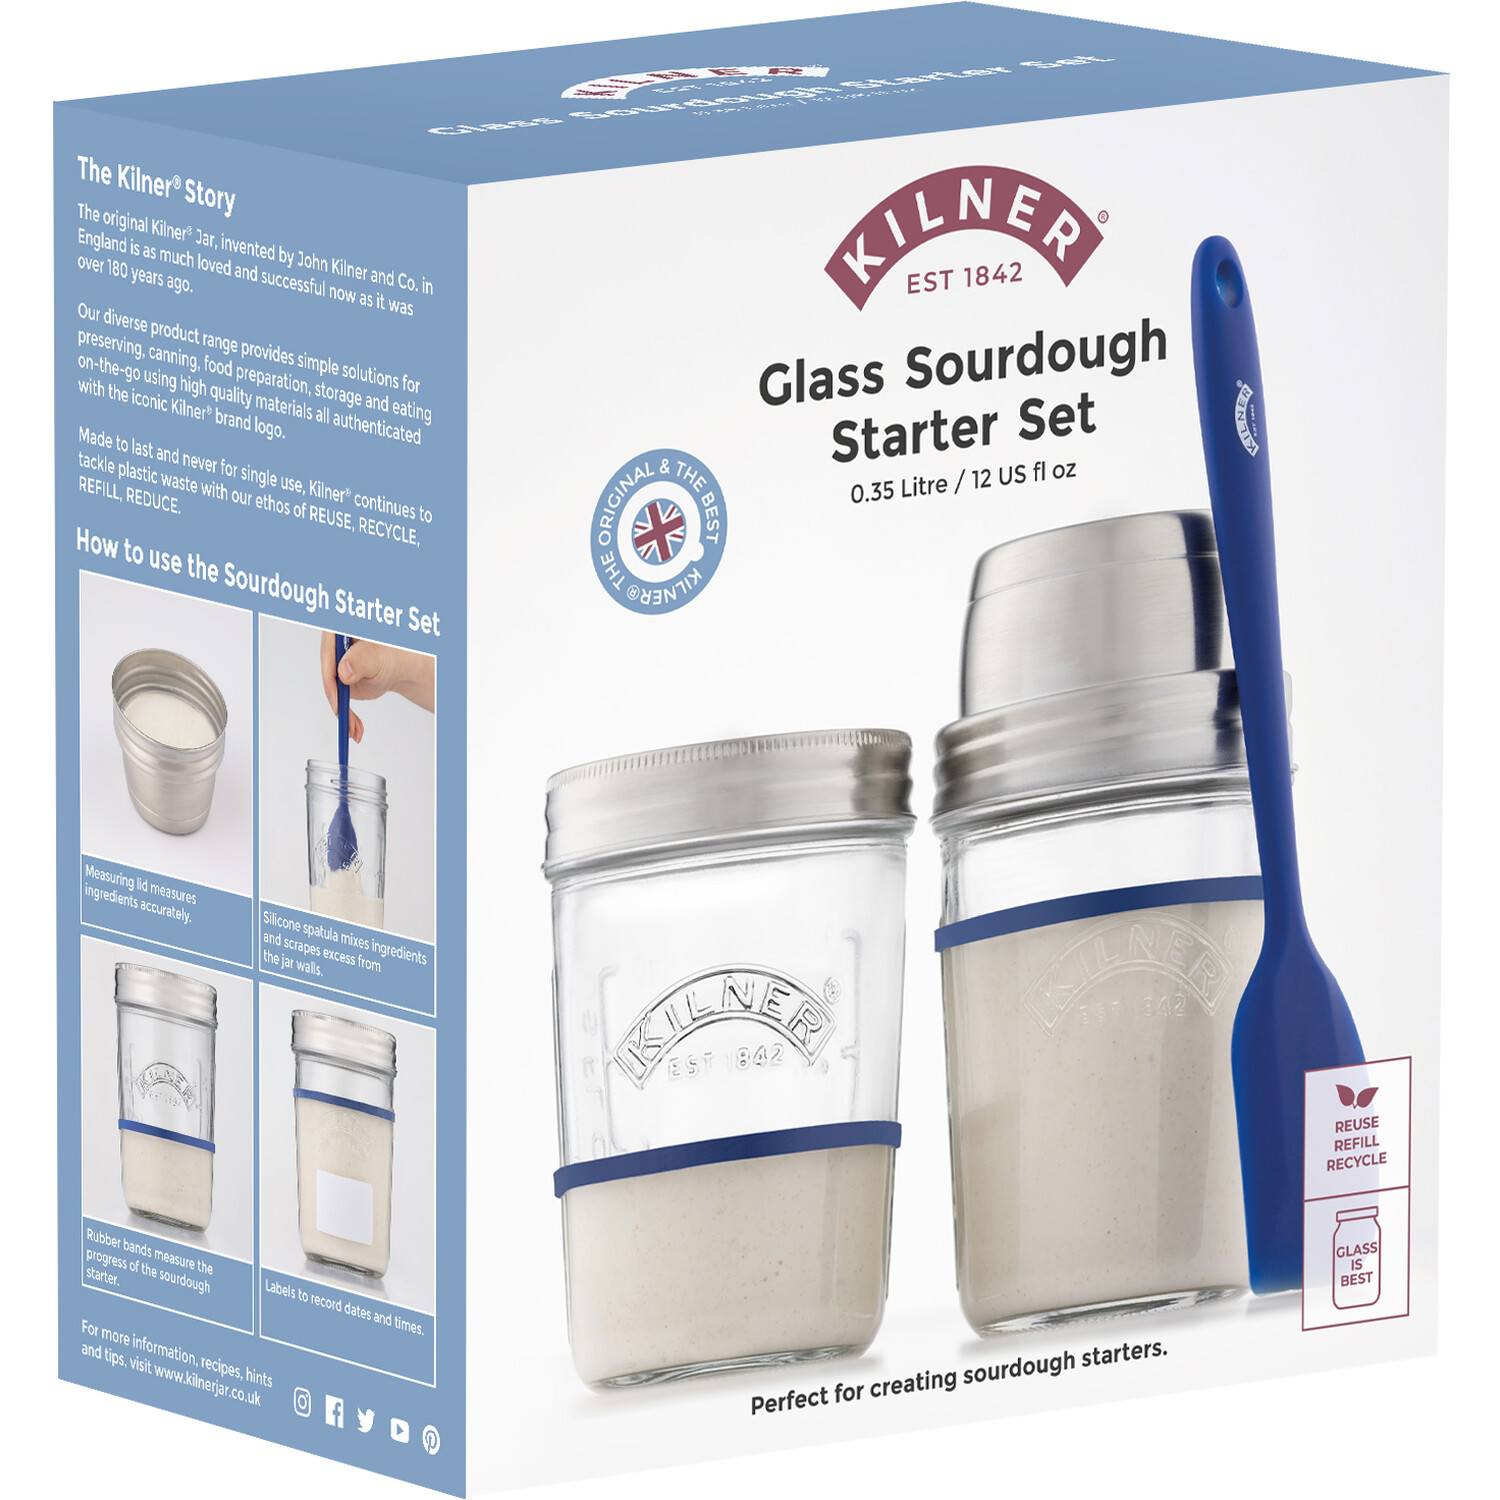 Kilner Glass Sourdough Starter Kit Image 2